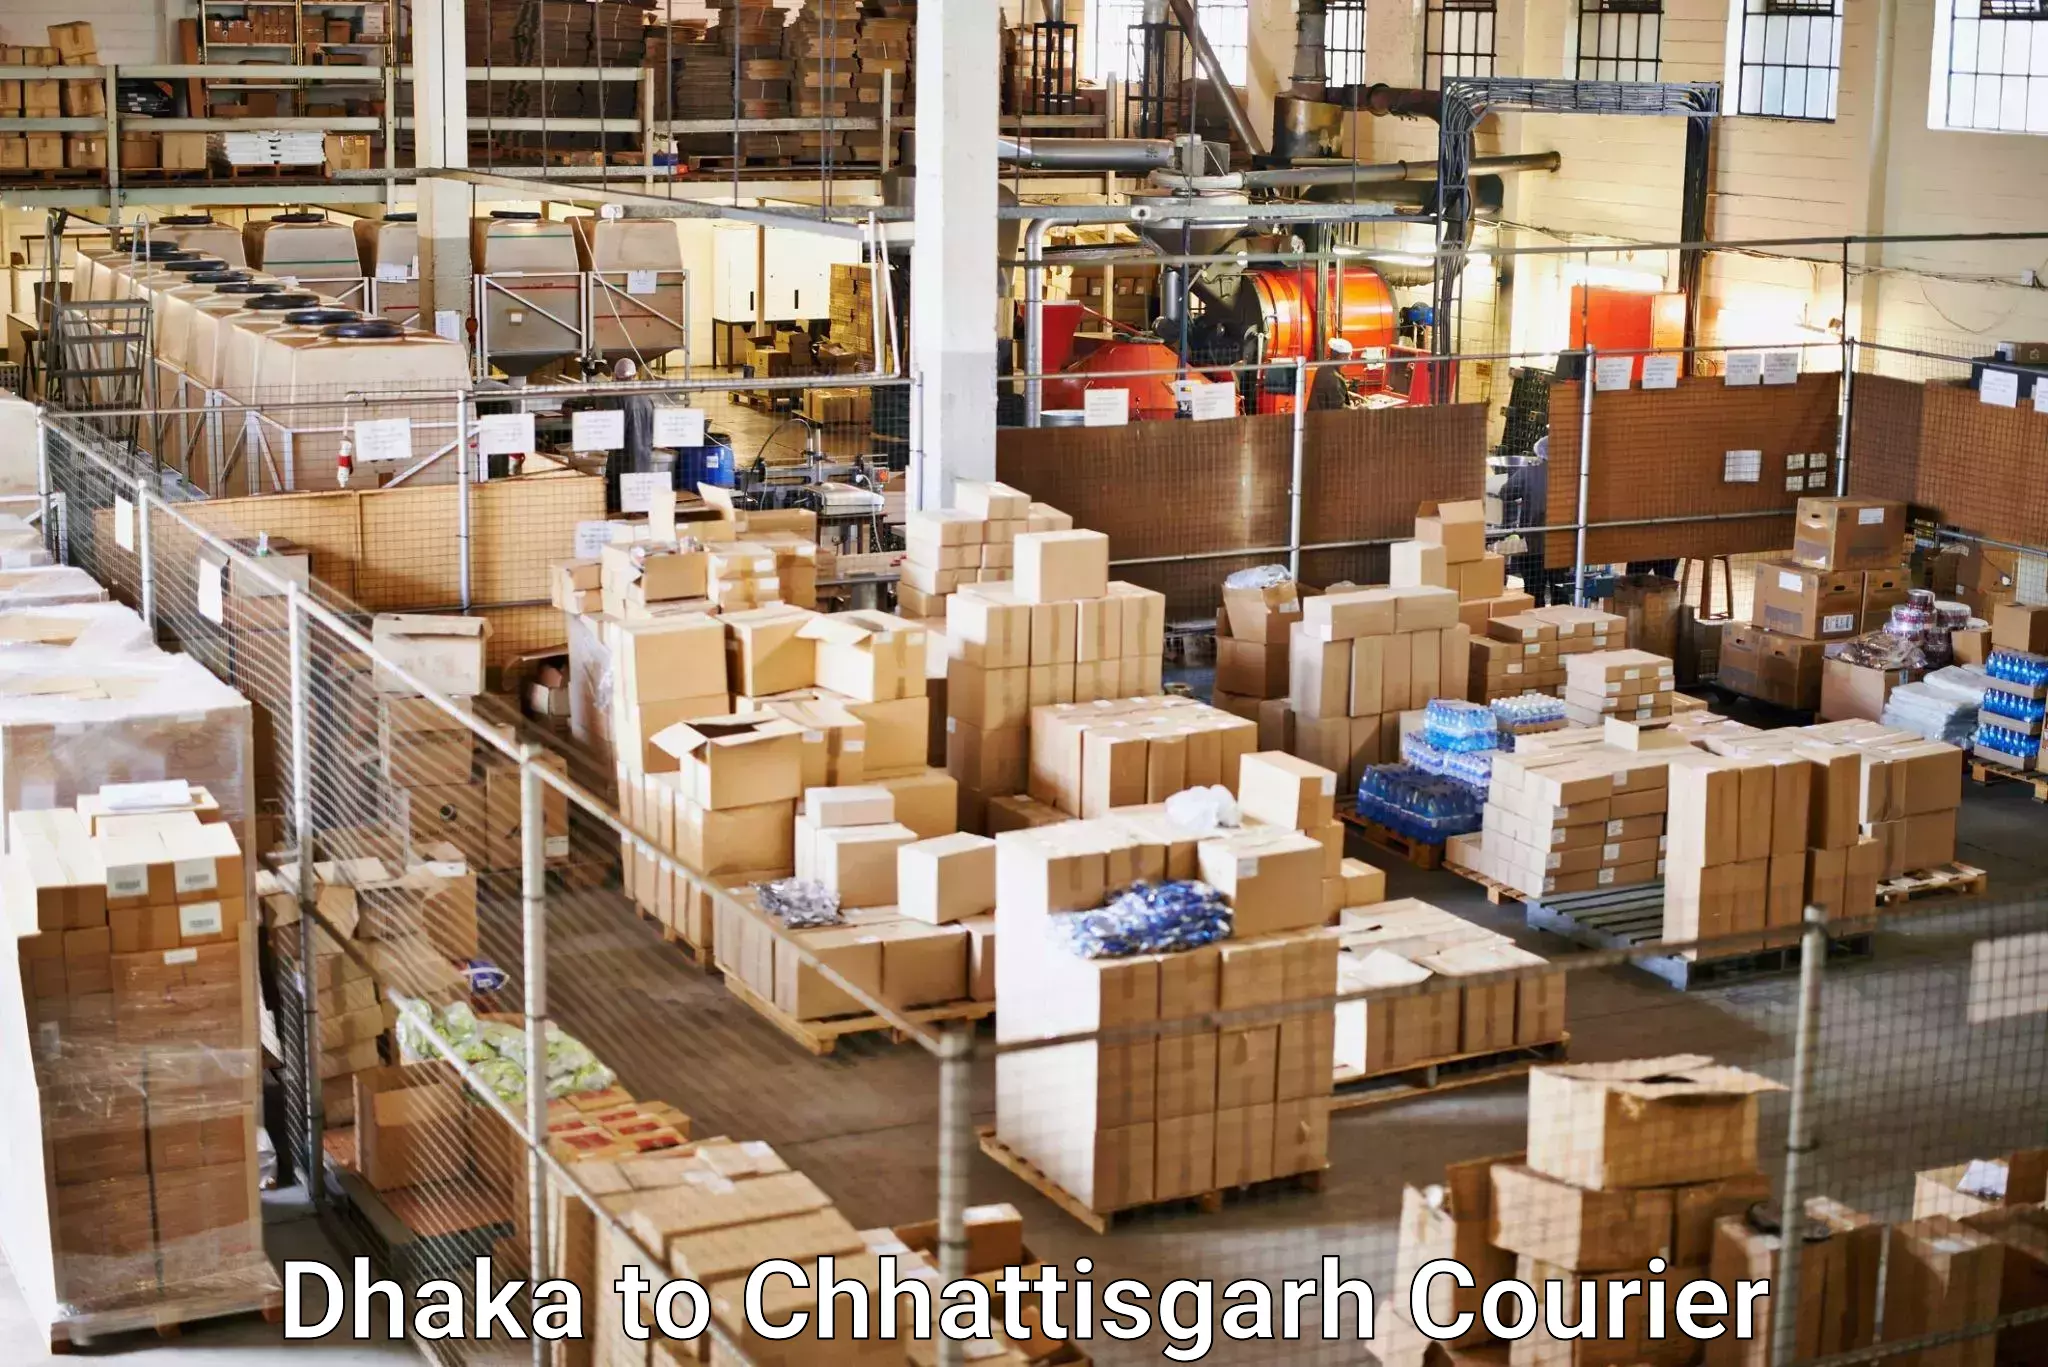 Courier service comparison Dhaka to Chhattisgarh